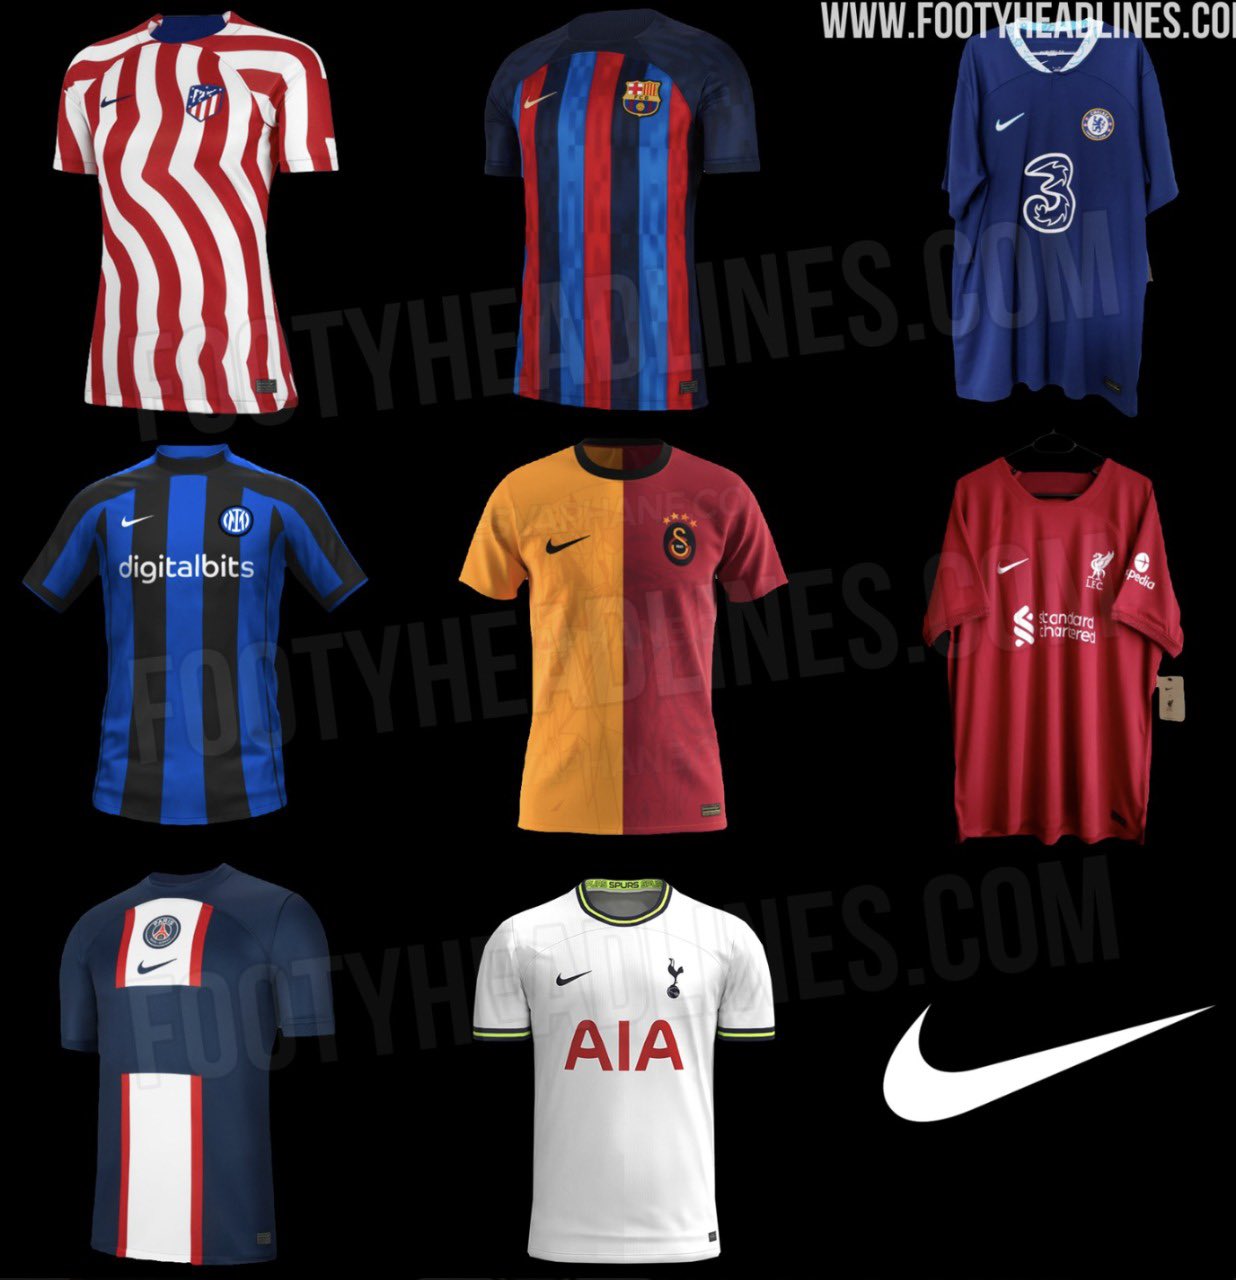 Futmais | Menino Fut 님의 트위터: "O novo uniforme principal de alguns clubes  patrocinados pela Nike. https://t.co/anG9QZBr6M" / 트위터